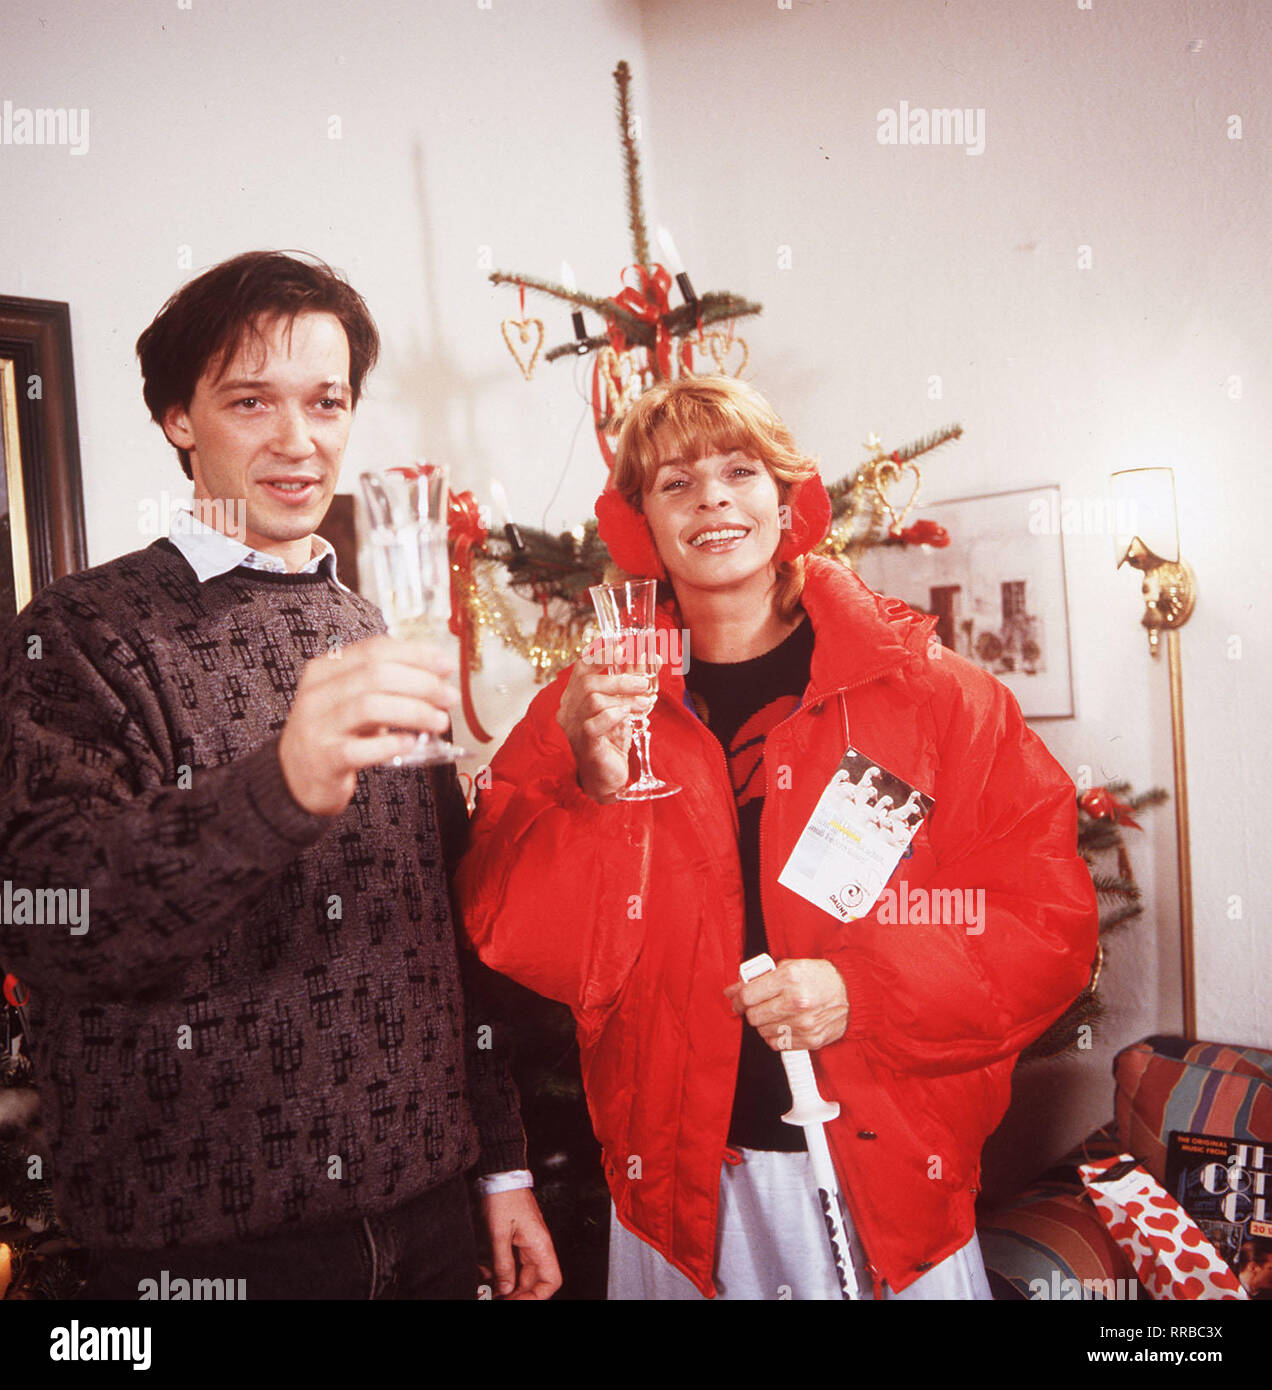 DIE SCHNELLE GERDI / TV-serie - D 1989 - Michael Verhoeven / 5. Gutes Neues Jahr / Herbert (Michael rollo) ist nicht tan begeistert von dem ganzen Weihnachtstrubel. Doch Gerdi (Senta Berger), riesig freut sich wieder die Familie vollzählig um sich zu haben ... / 34750 / , 20DFAB.S. / Überschrift: DIE SCHNELLE GERDI / BRD 1989 Foto de stock